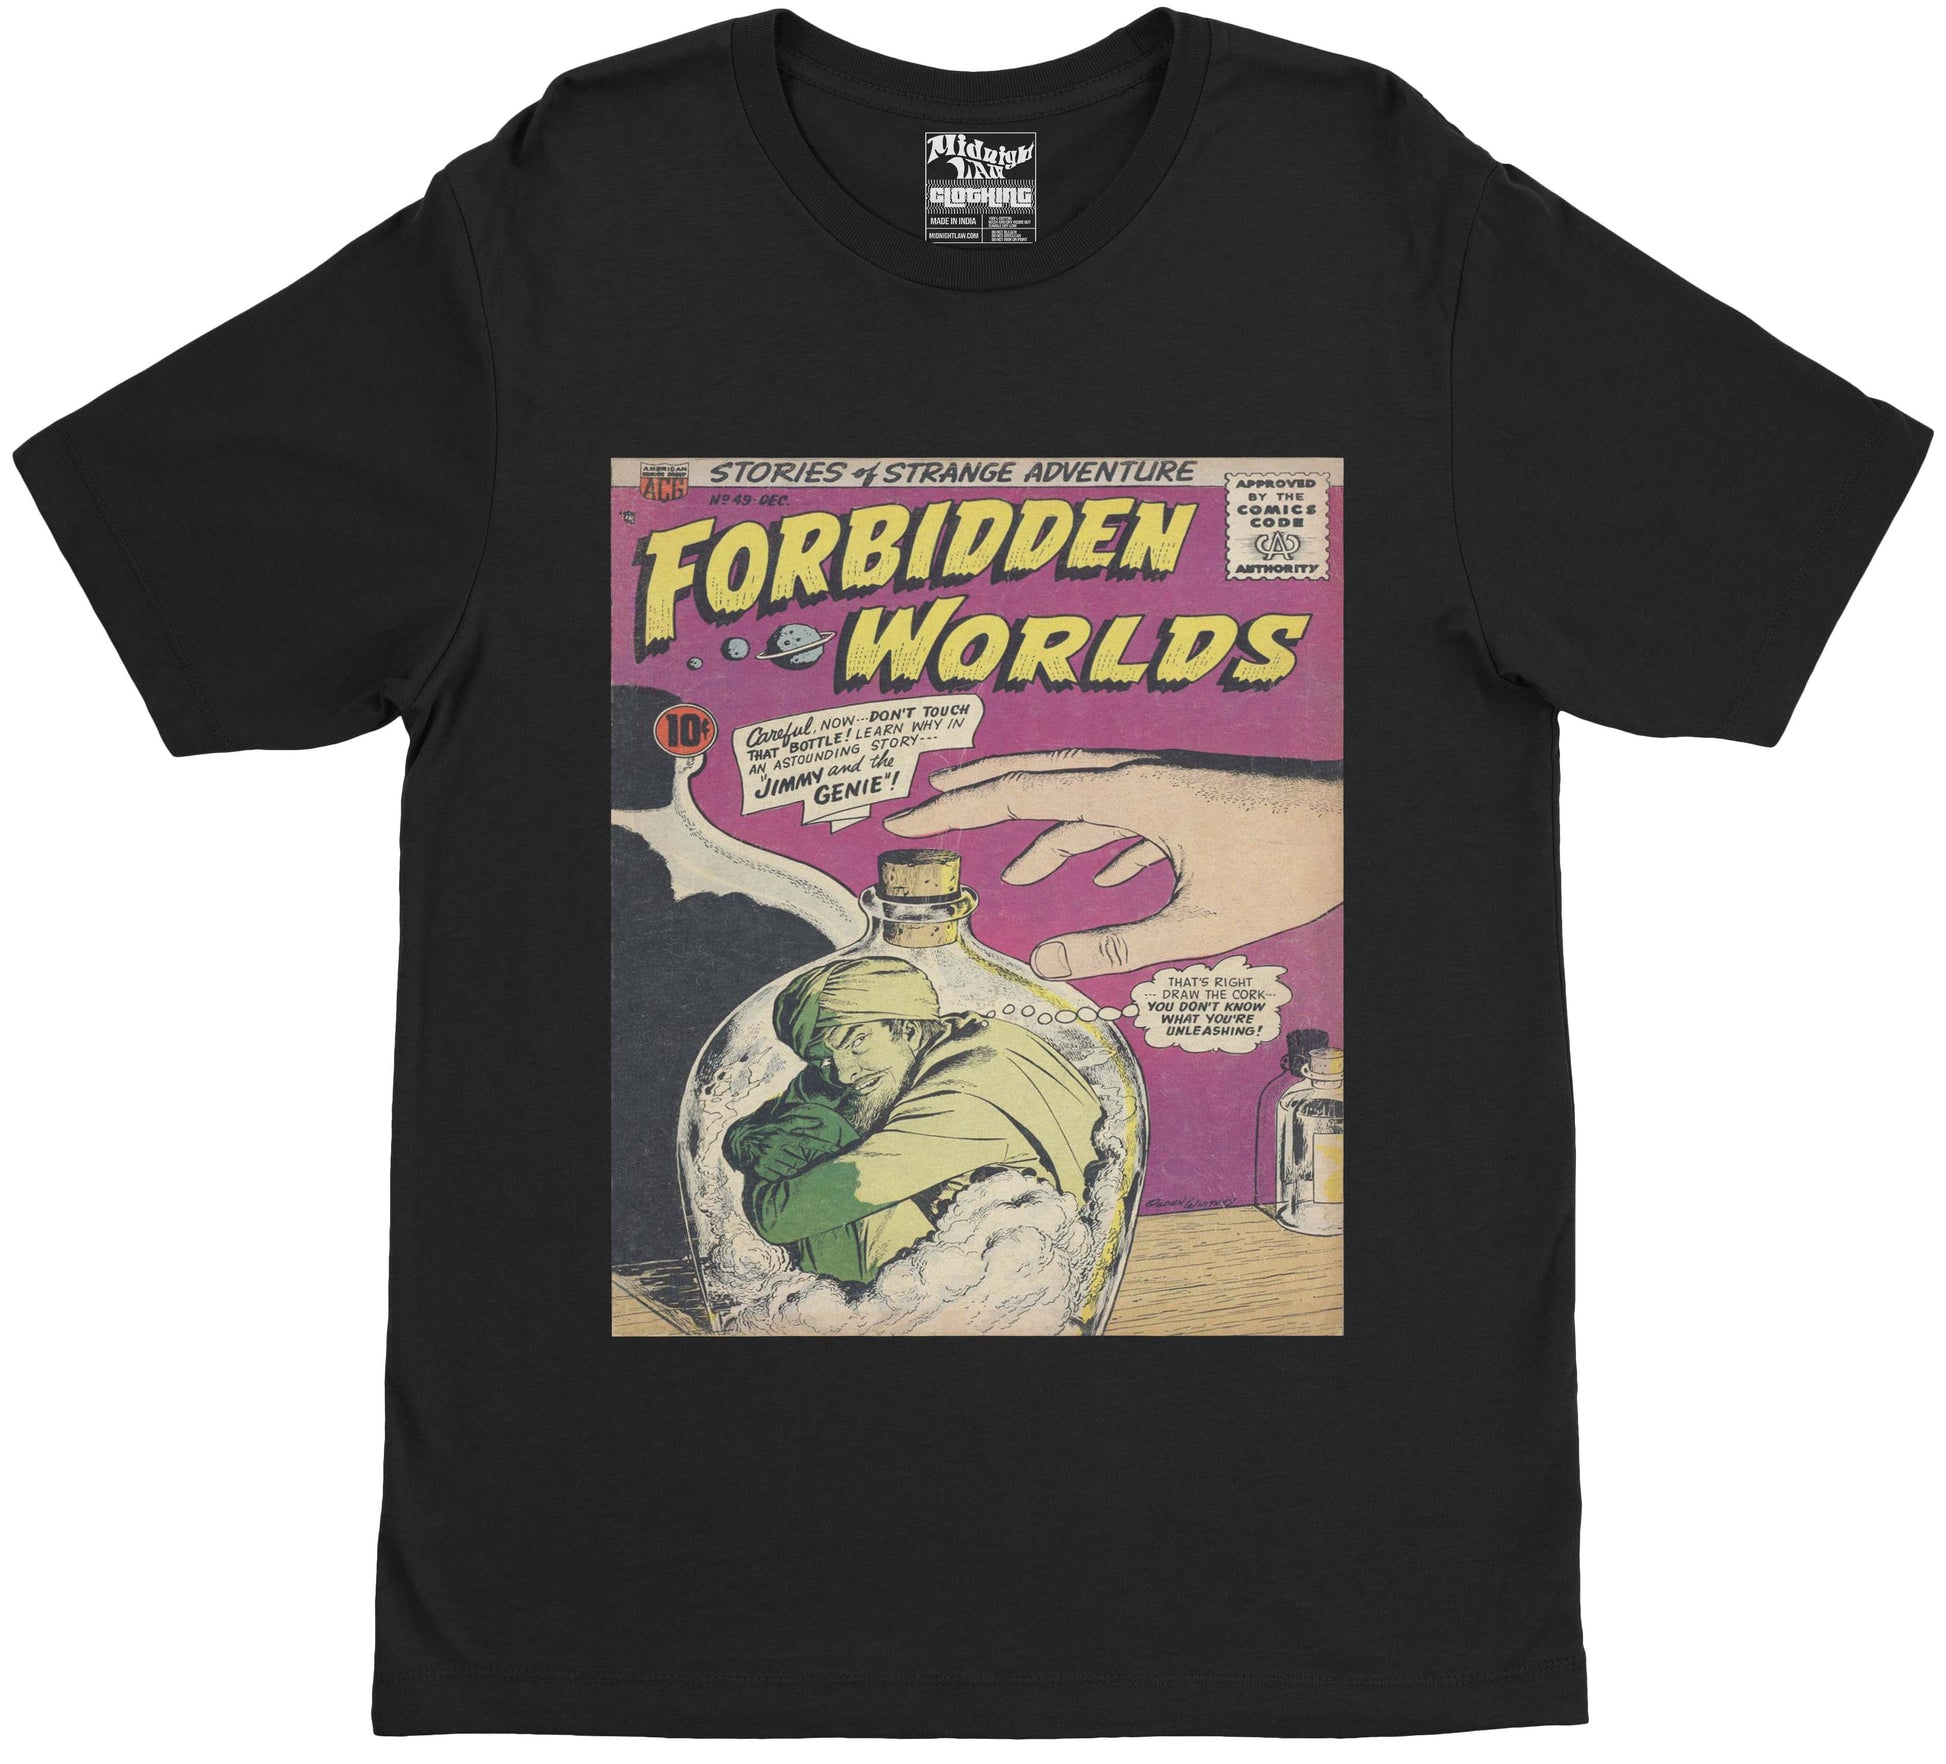 Forbidden Worlds T-Shirt